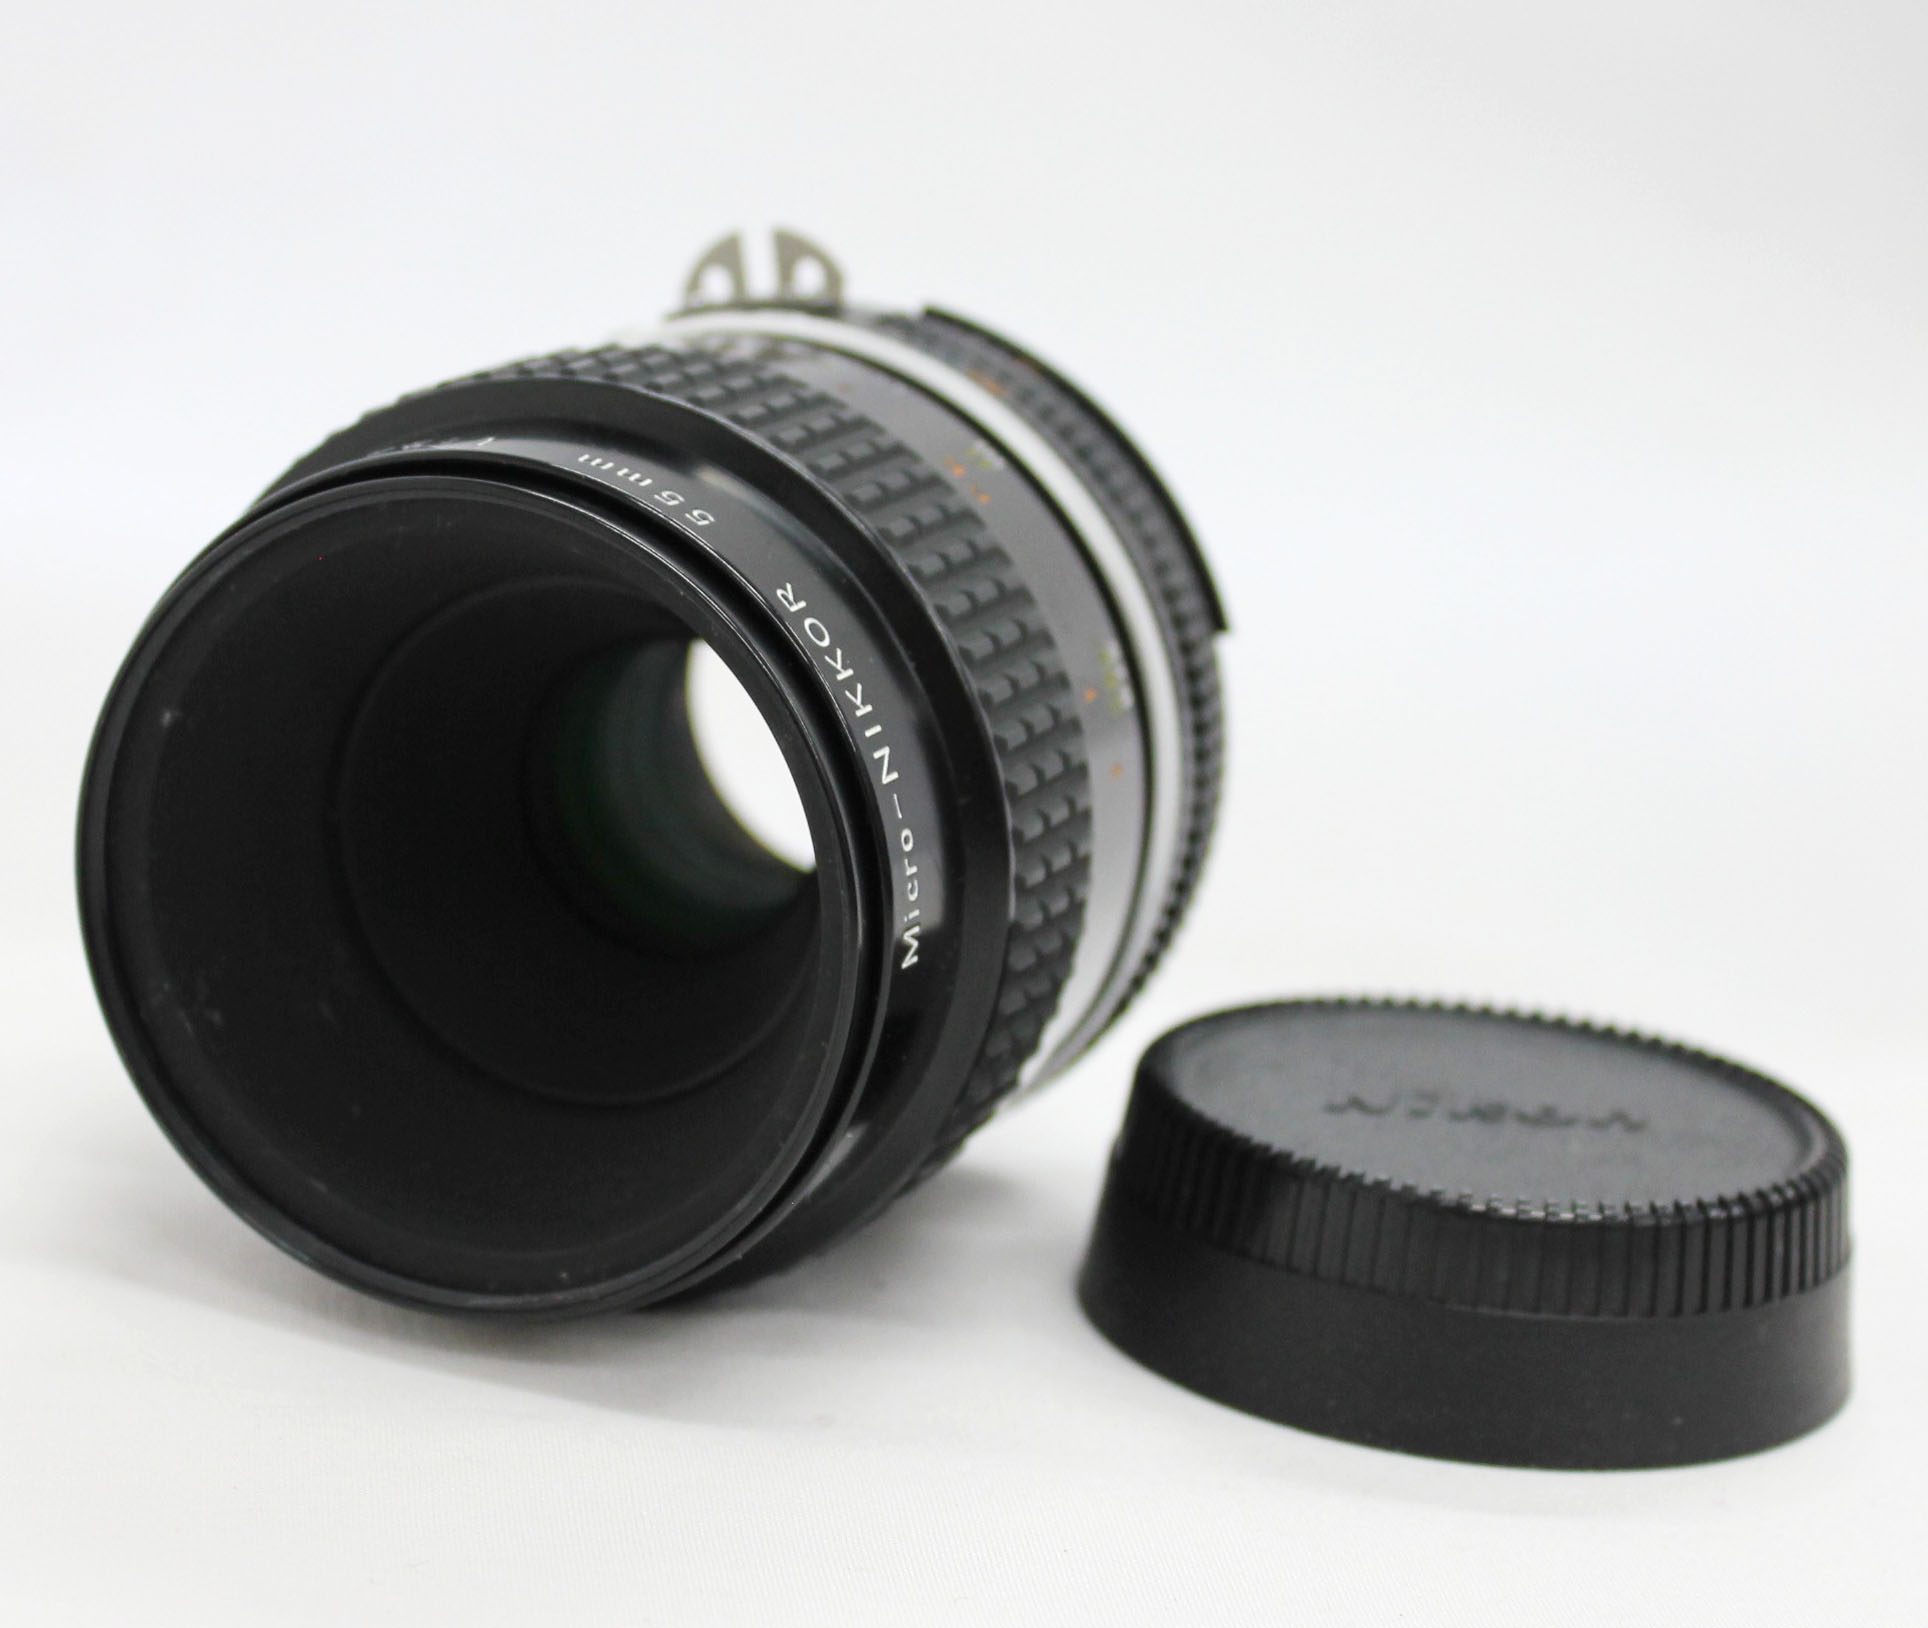 Japan Used Camera Shop | [For Repair] Nikon Ai-s ais Micro-NIKKOR 55mm F/2.8 Macro Lens from Japan